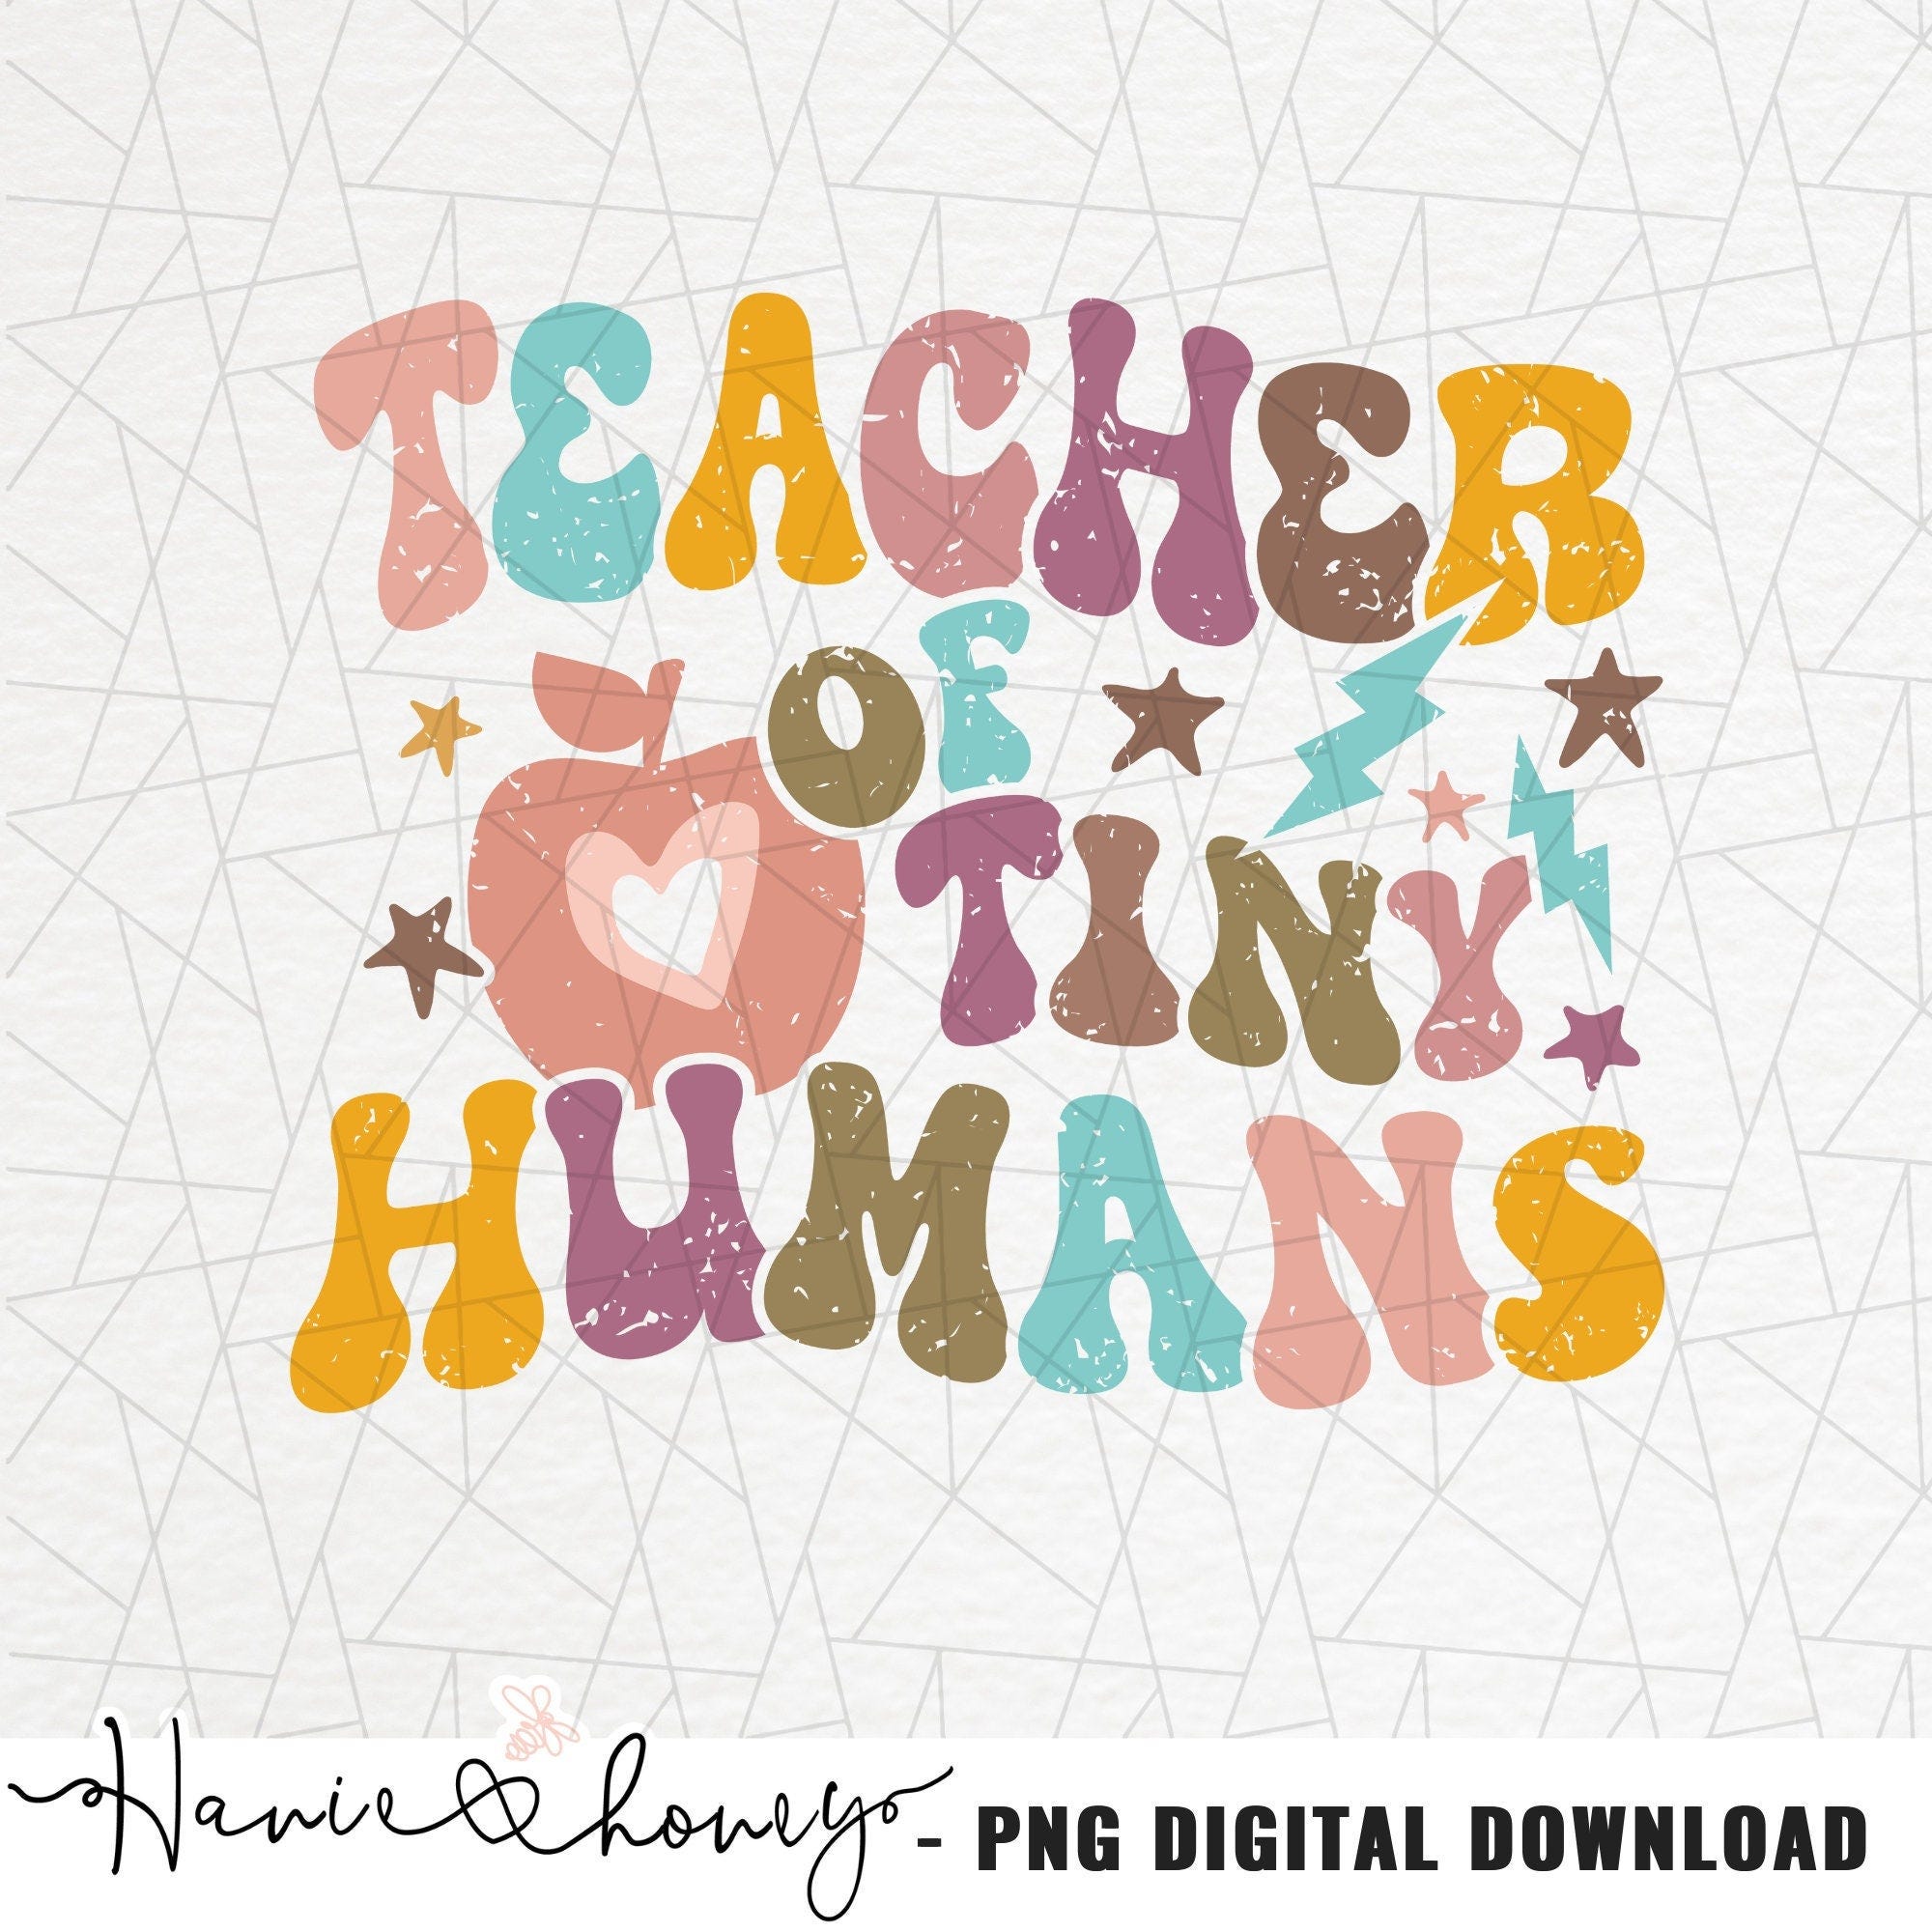 Teacher of tiny humans png - Teacher png - Tiny humans png - School png - Teacher shirt png - Teacher appreciation - Teacher life png -